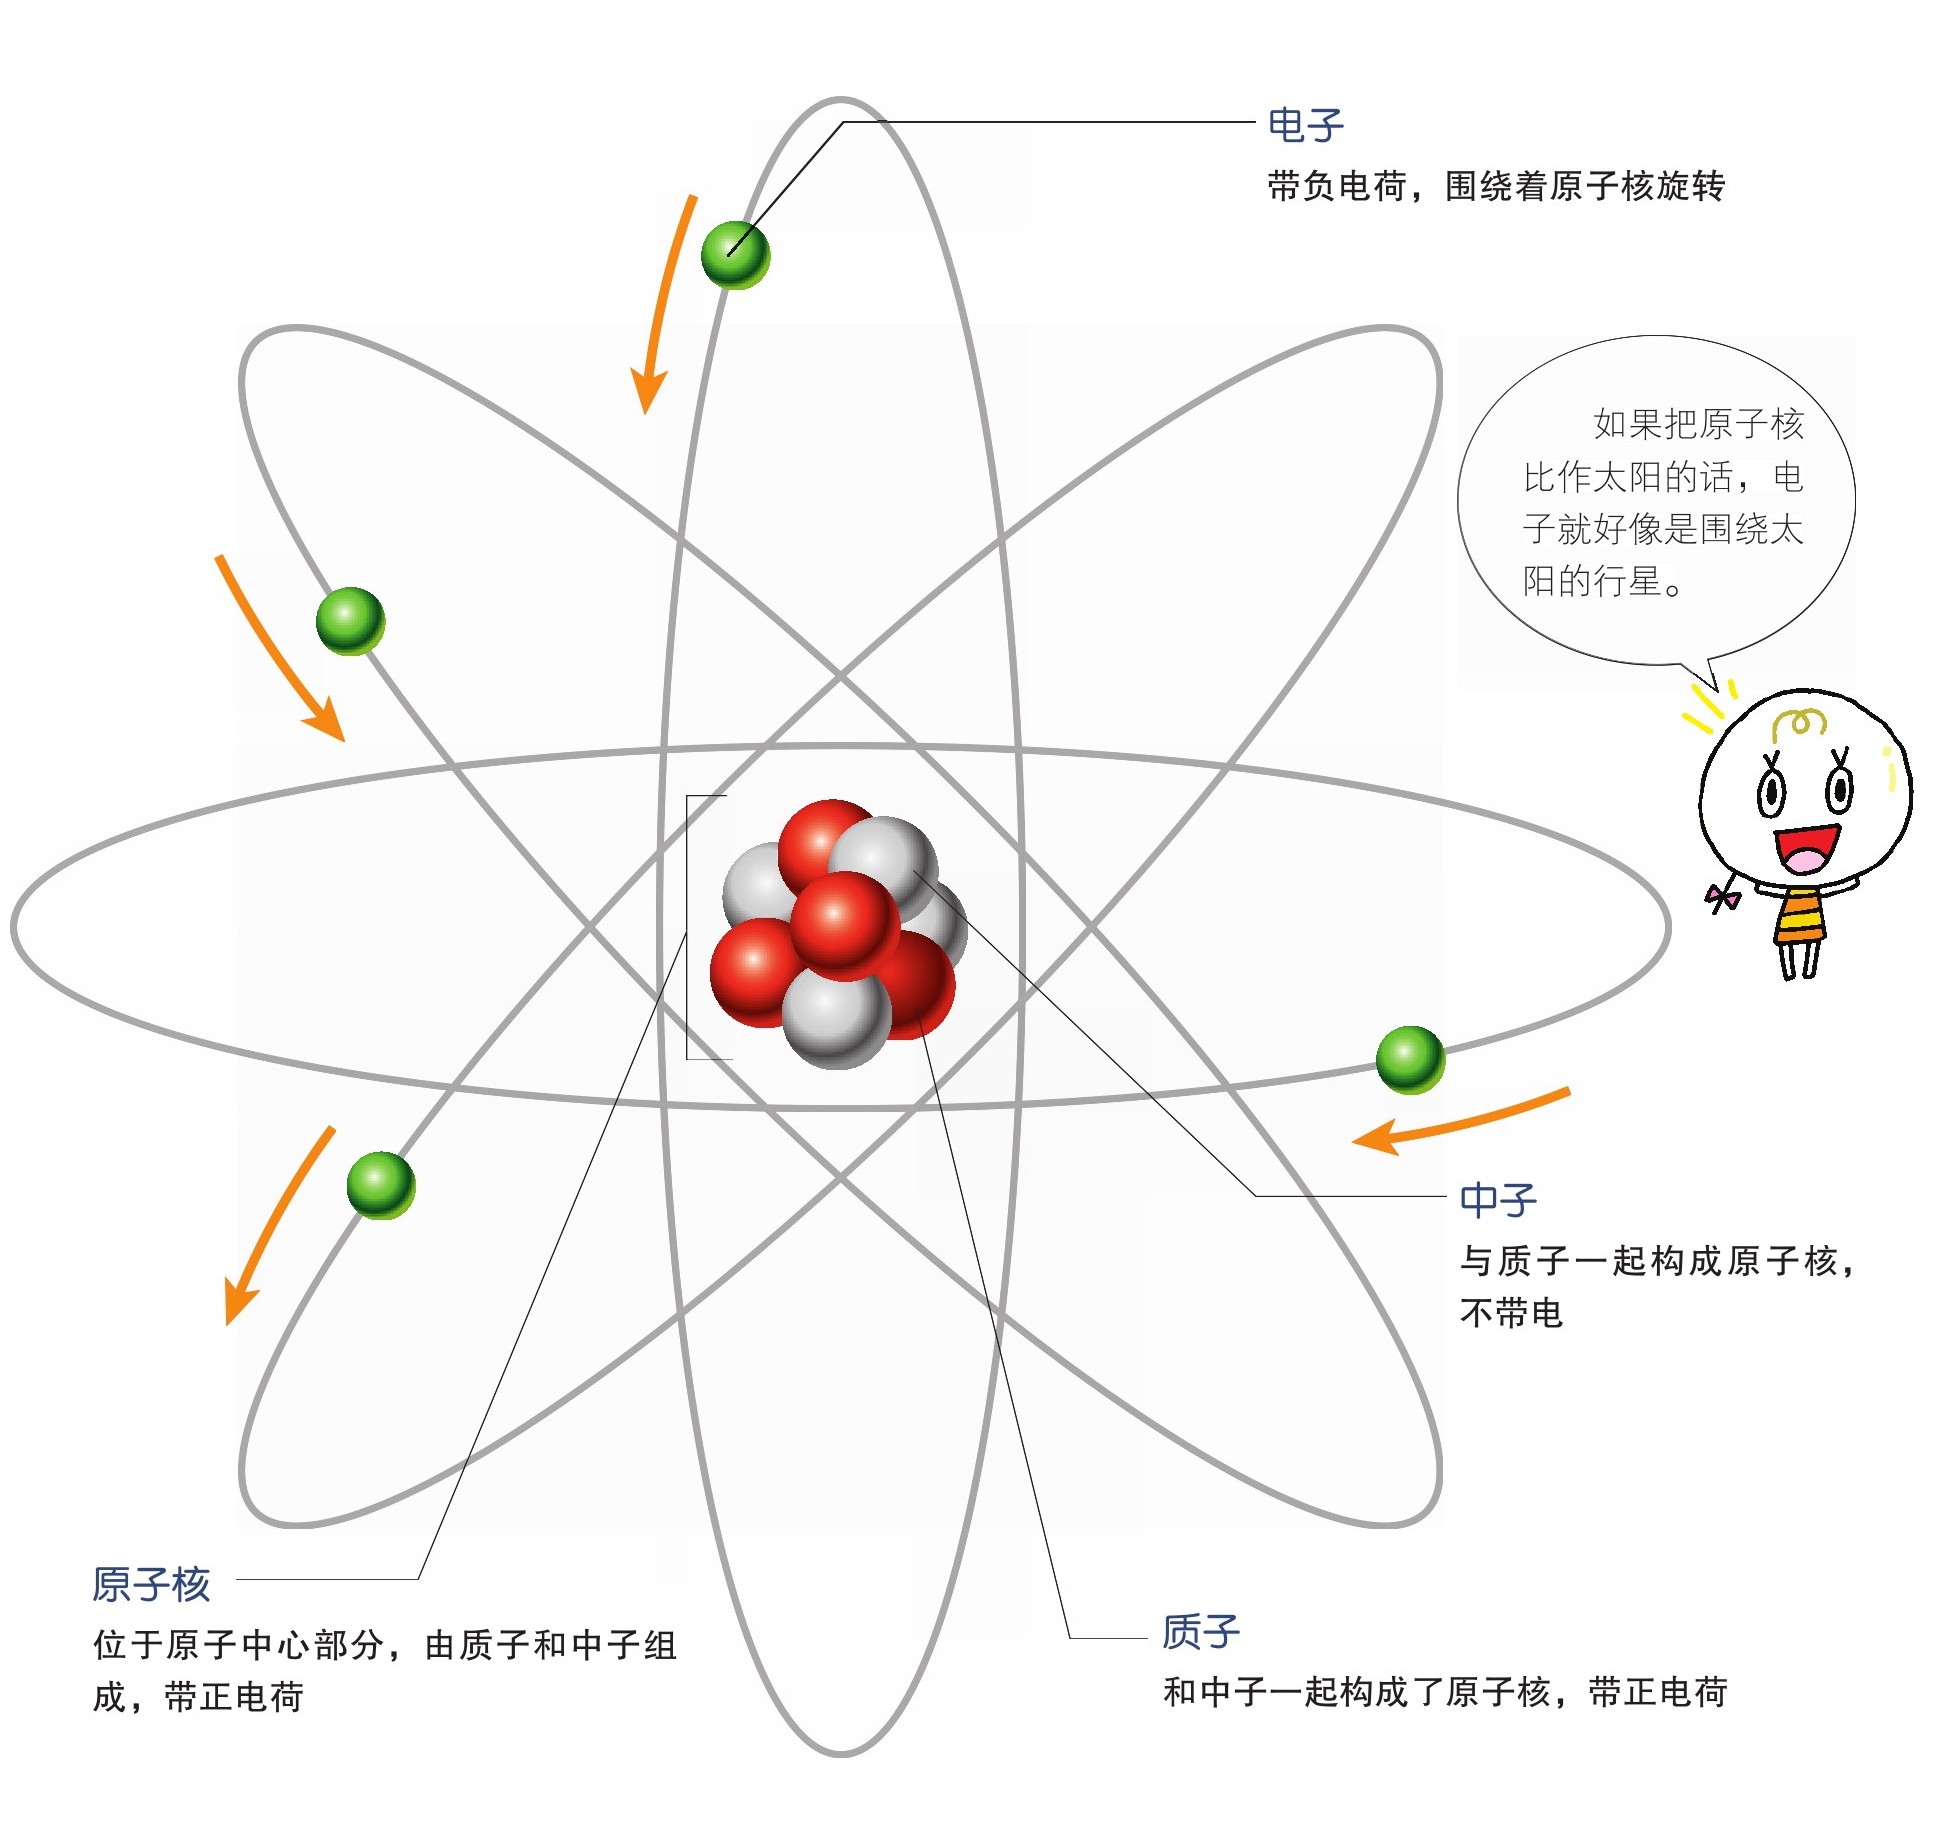 在这个原子核的周围围绕着一种被称为电子的微粒,其数量和质子一样.